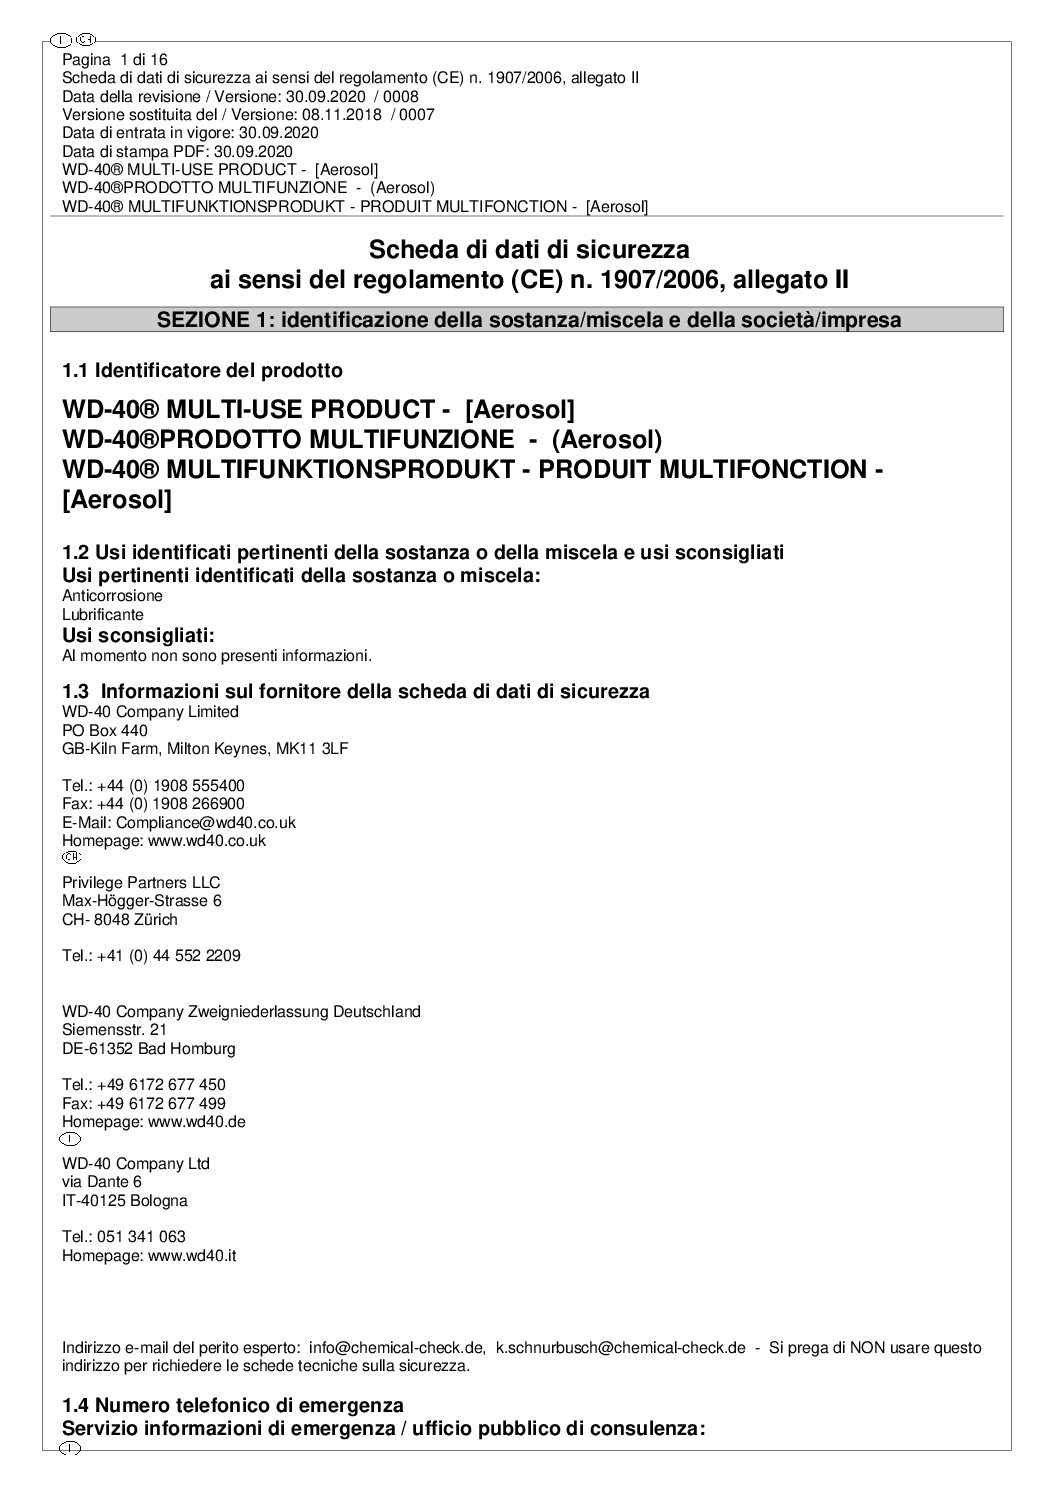 WD-40 – PRODOTTO MULTIFUNZIONE 600 ML FLEXIBILE